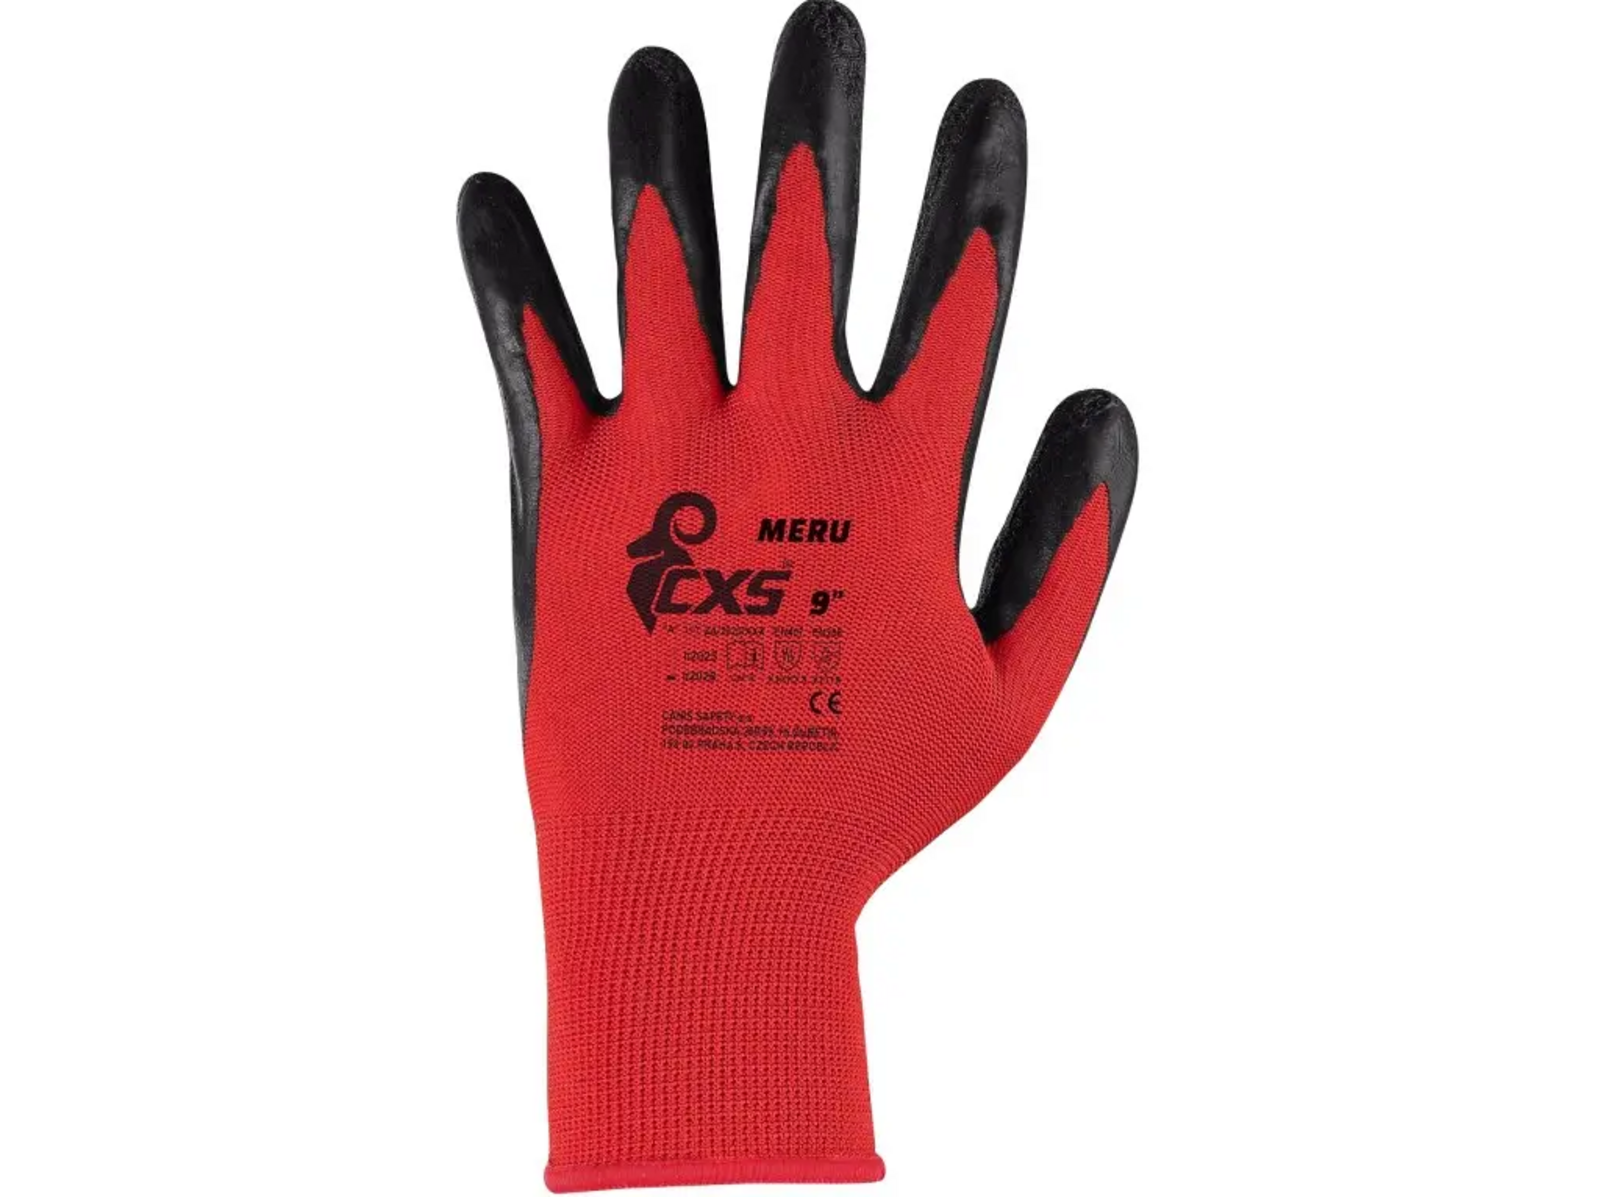 Povrstvené rukavice CXS Meru - veľkosť: 8/M, farba: červená/čierna